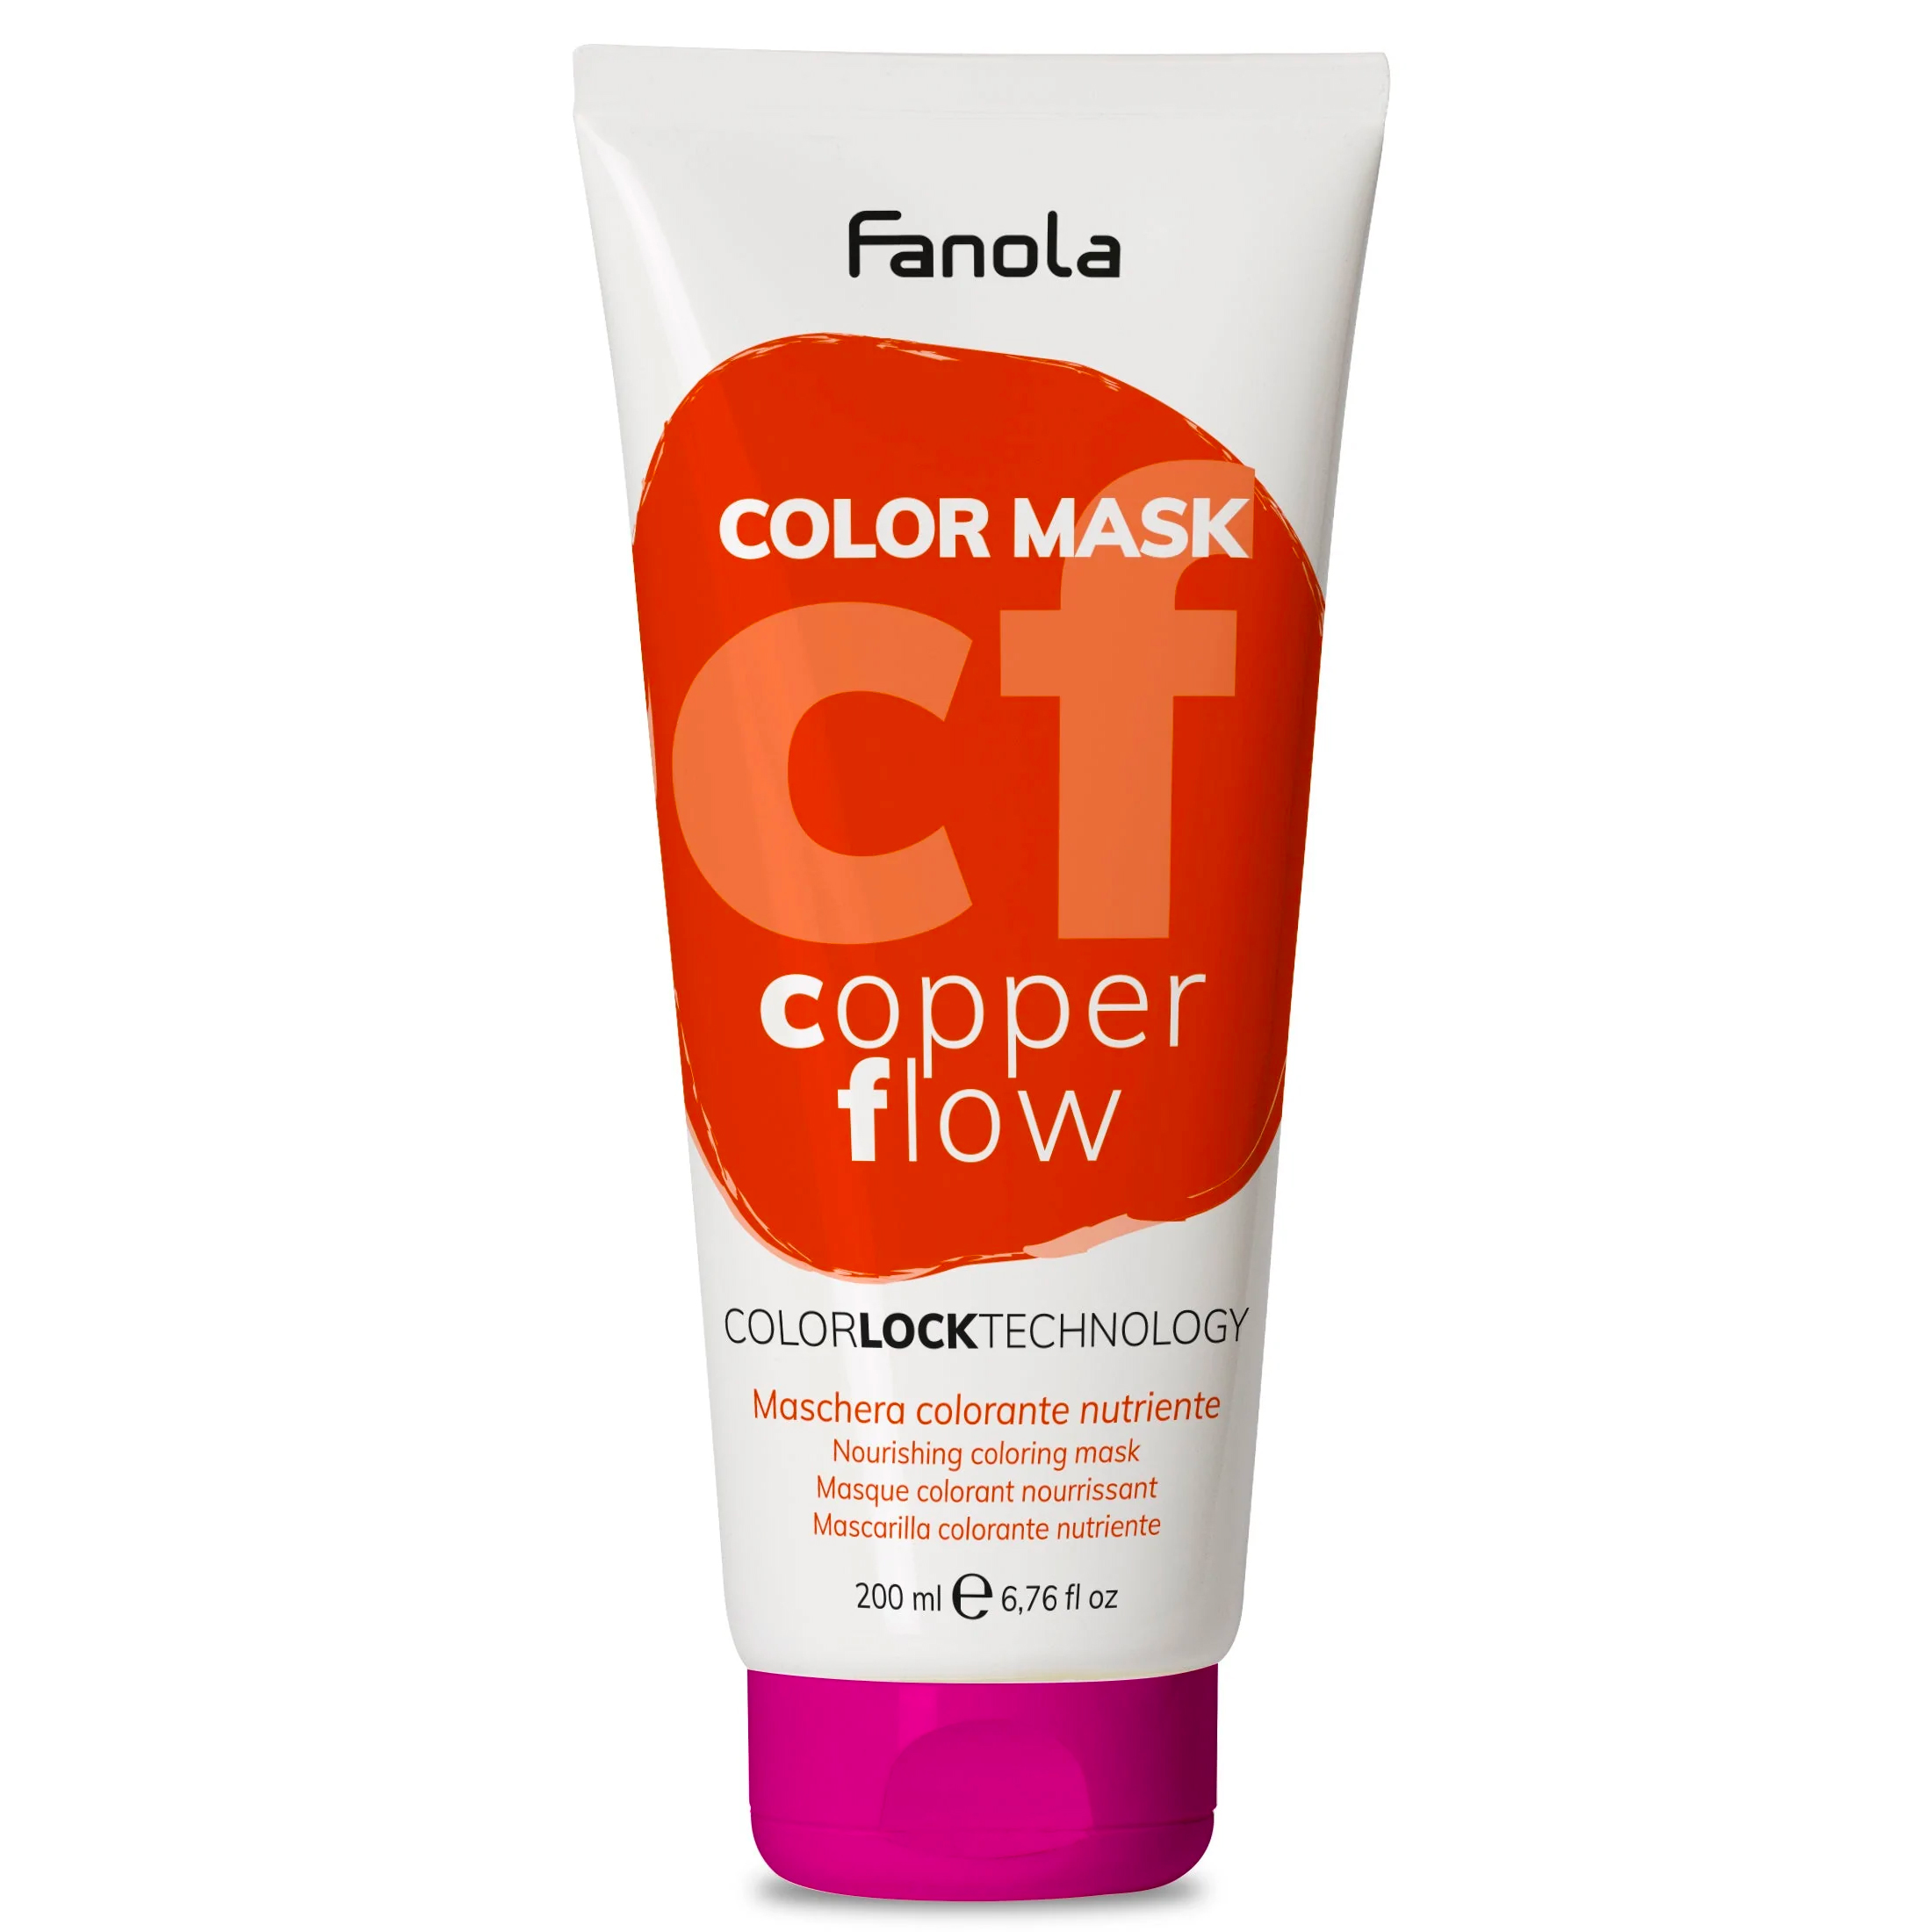 Color Mask Copper Flow Fanola 200 ML